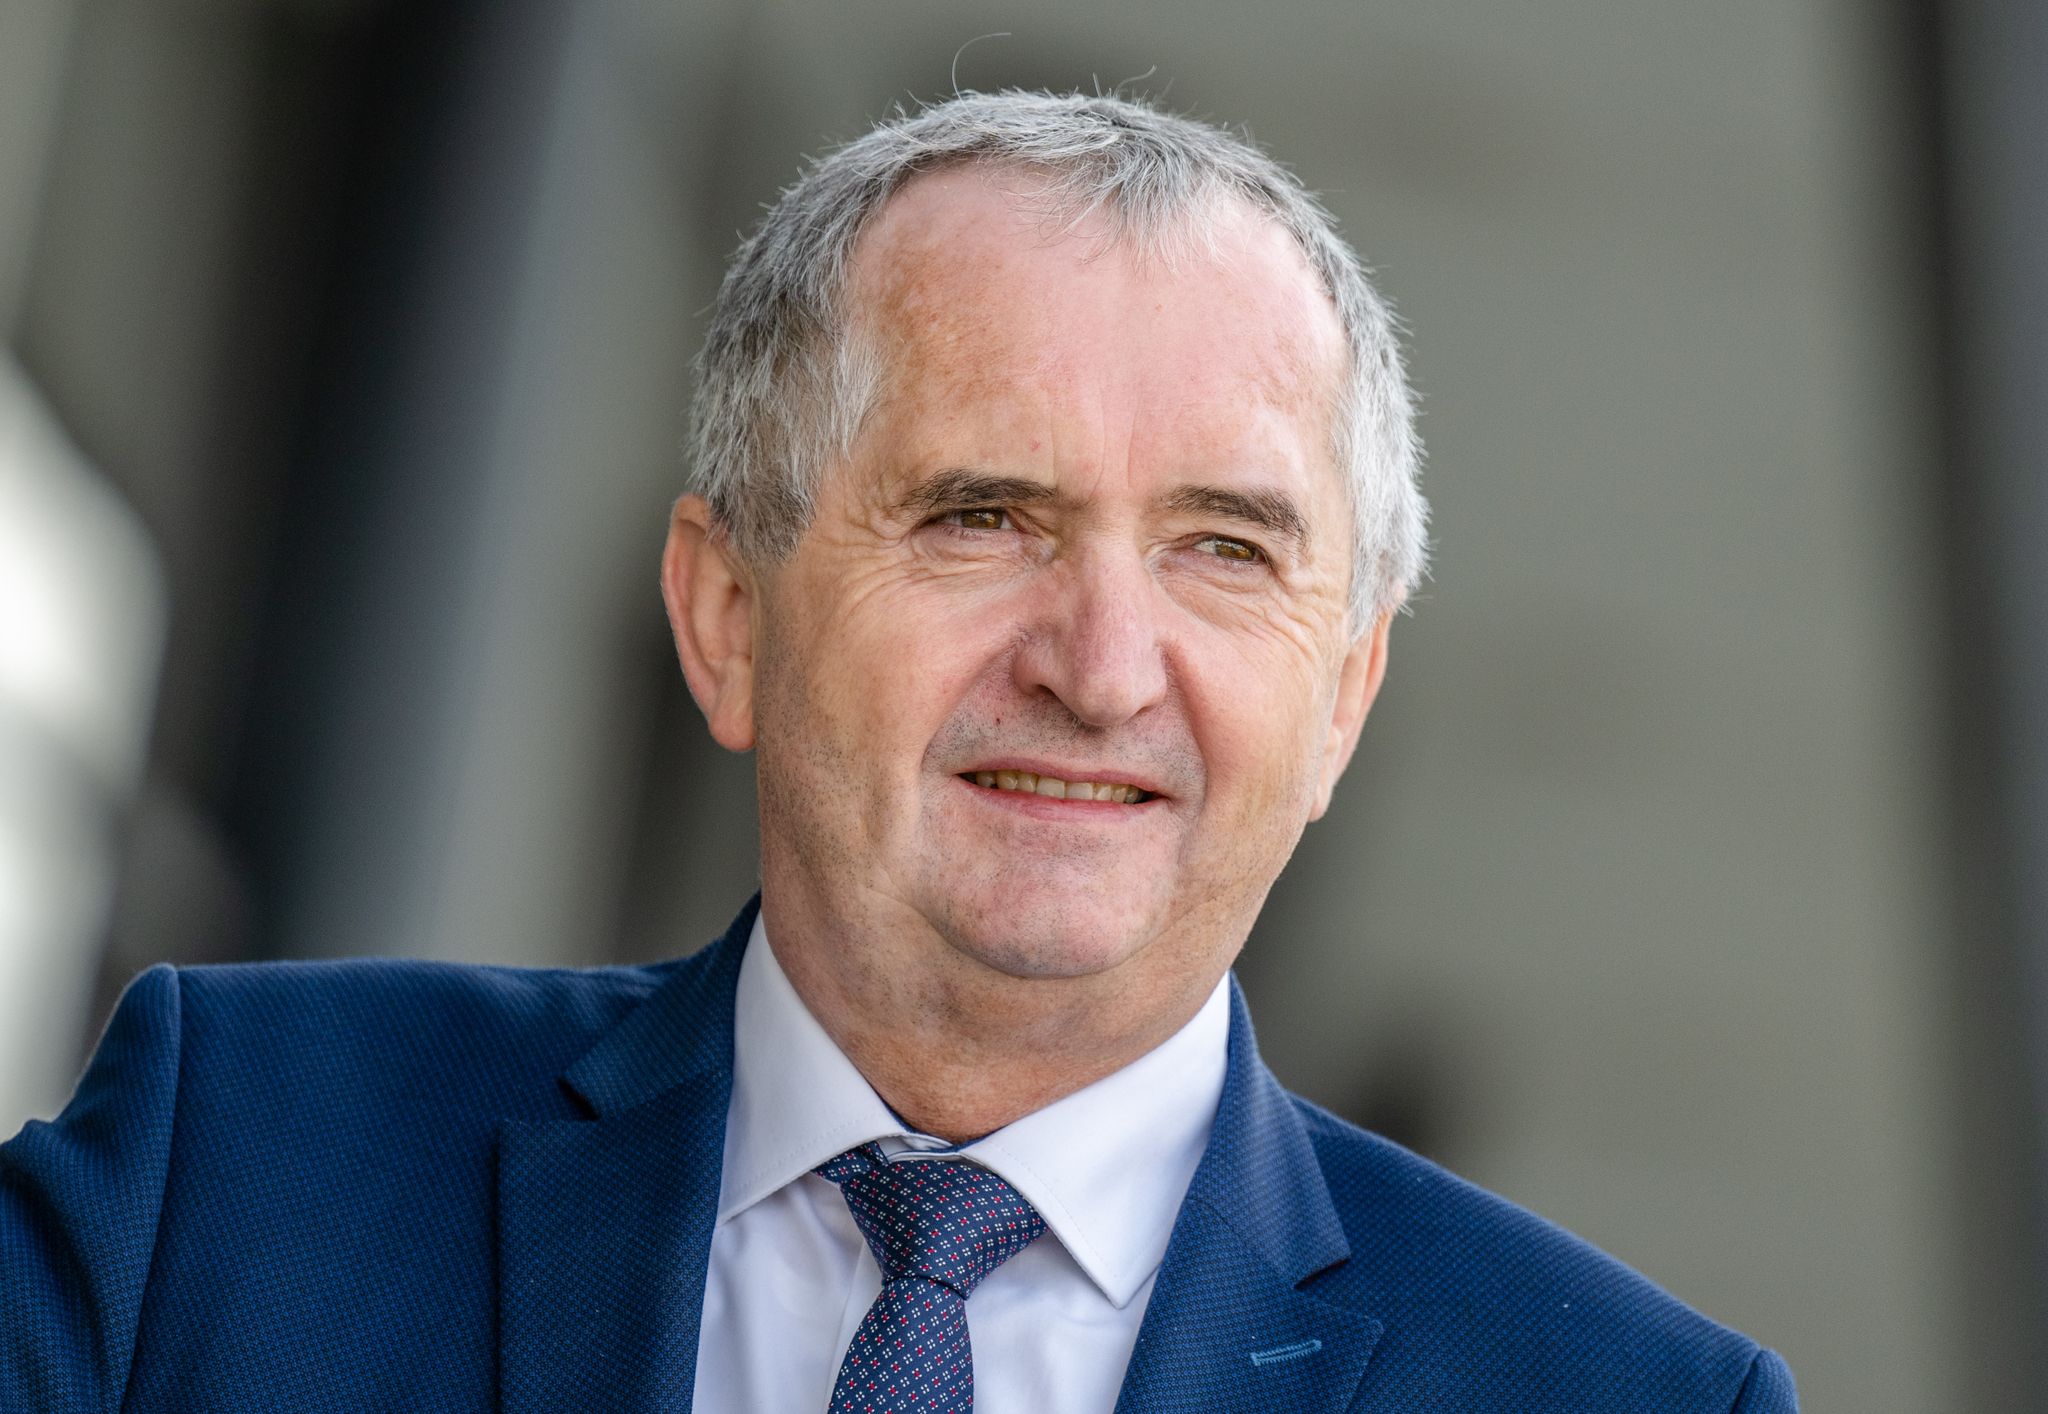 Thomas Schmidt (CDU), Minister für Strukturentwicklung in Sachsen, aufgenommen vor dem Landtag.